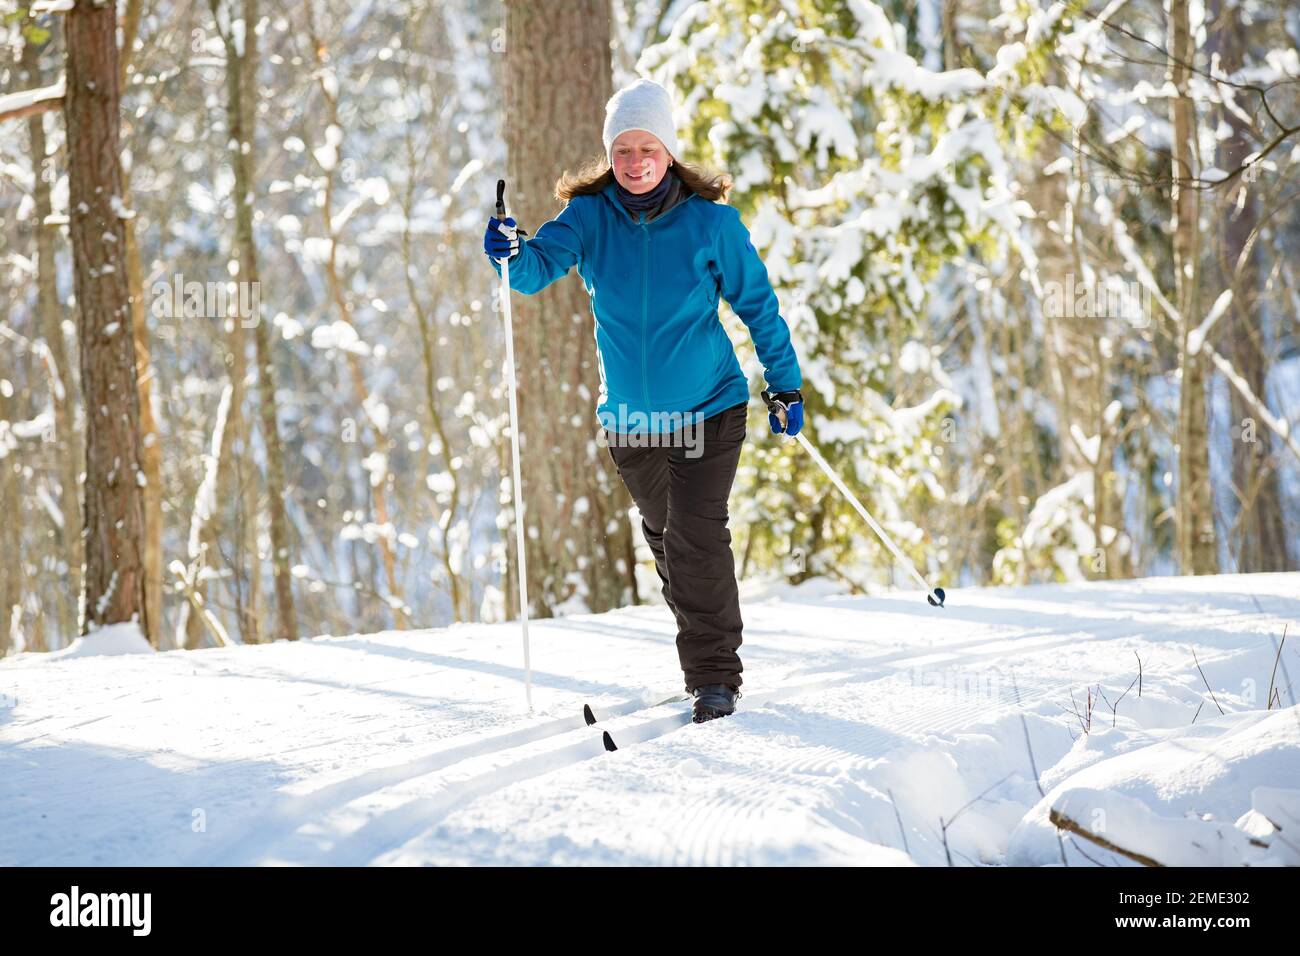 Sports d'hiver en Finlande - ski de fond. Femme enceinte ski dans une forêt  ensoleillée d'hiver couverte de neige. Des personnes actives à l'extérieur.  Vue panoramique Photo Stock - Alamy